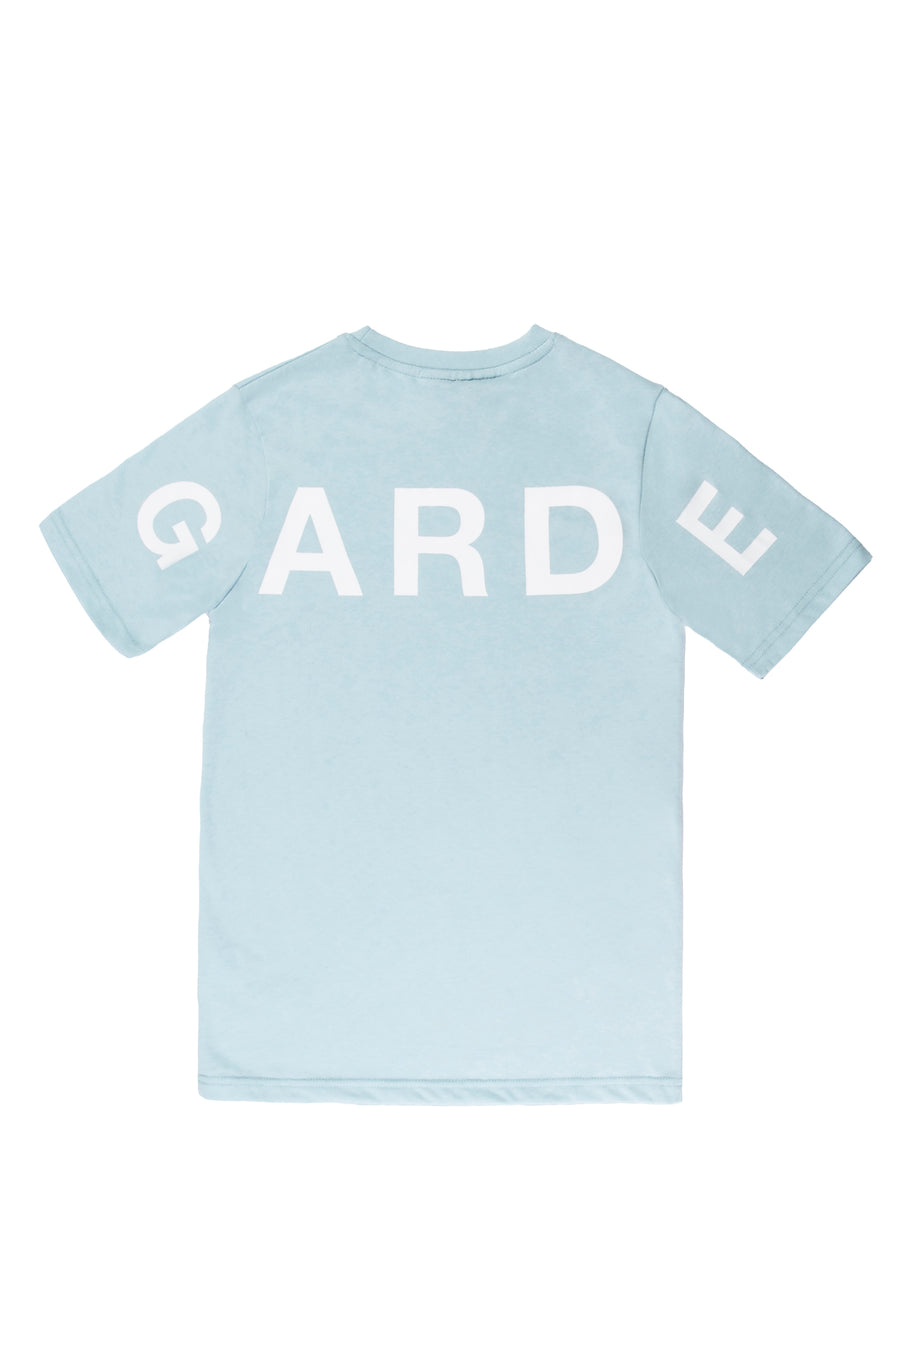 Boys Garde T-Shirt in Sky Blue